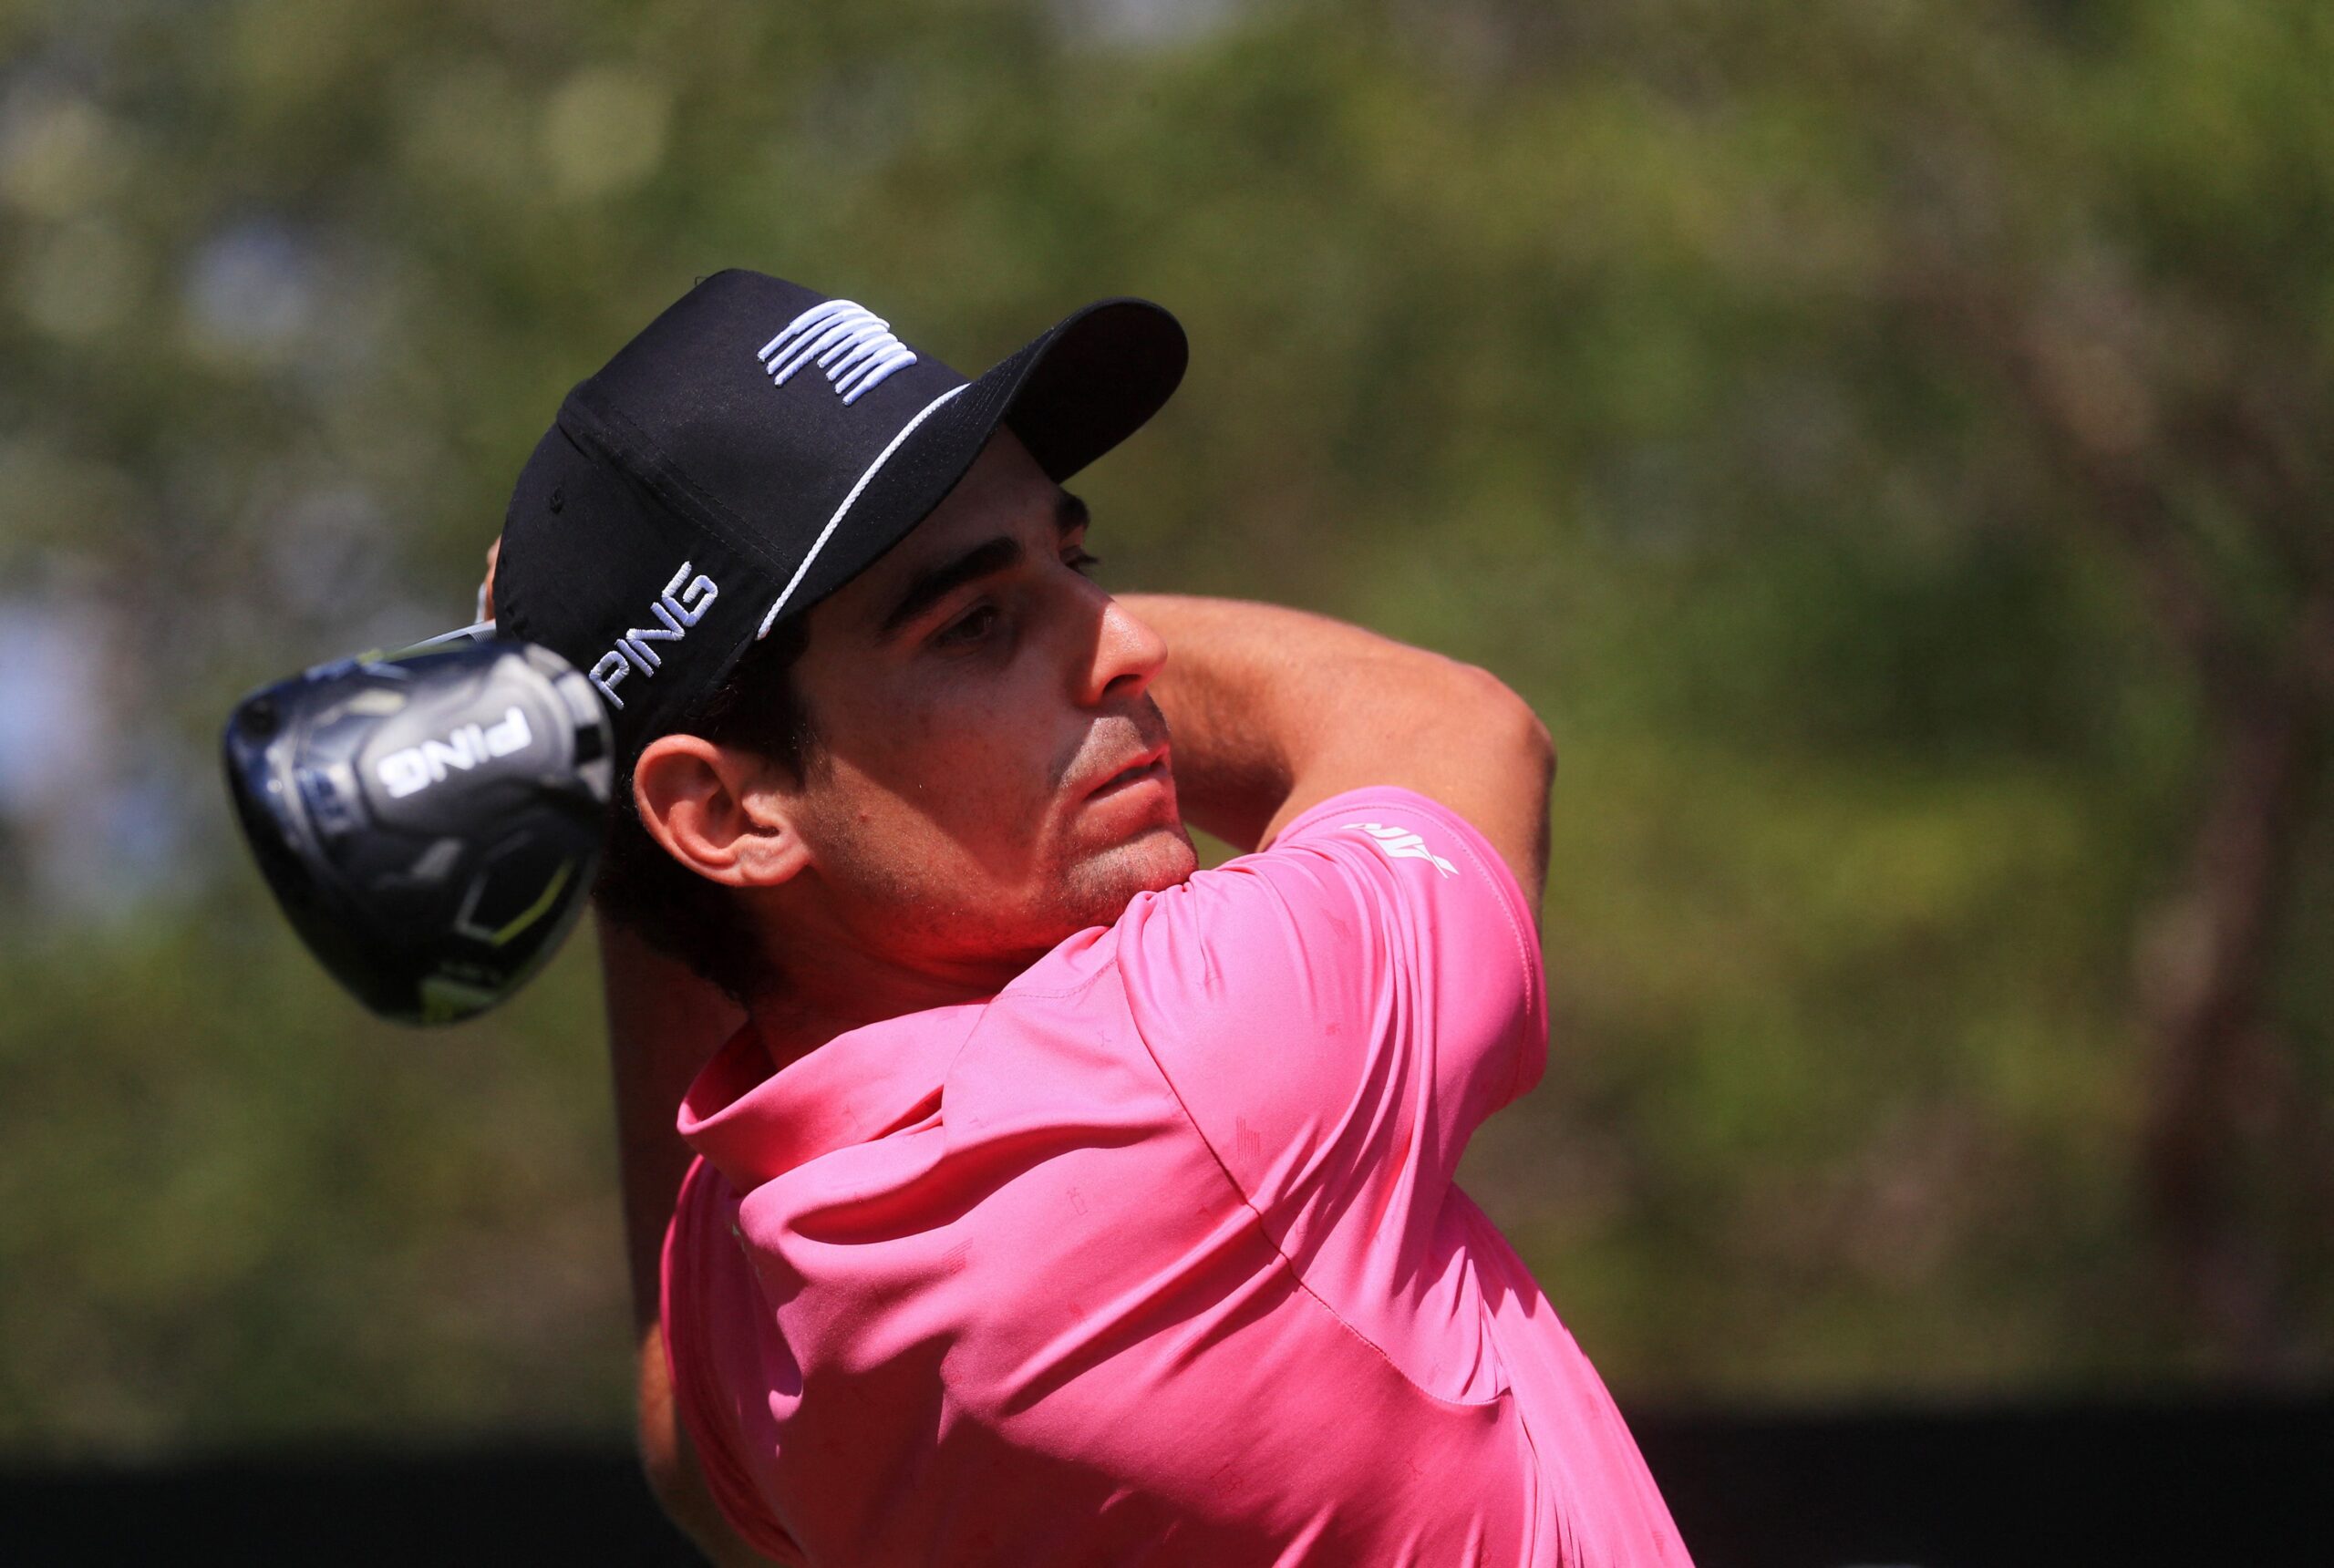 Niemann quiere romper su sequía de títulos en el LIV Golf. Foto: REUTERS/Raquel Cunha